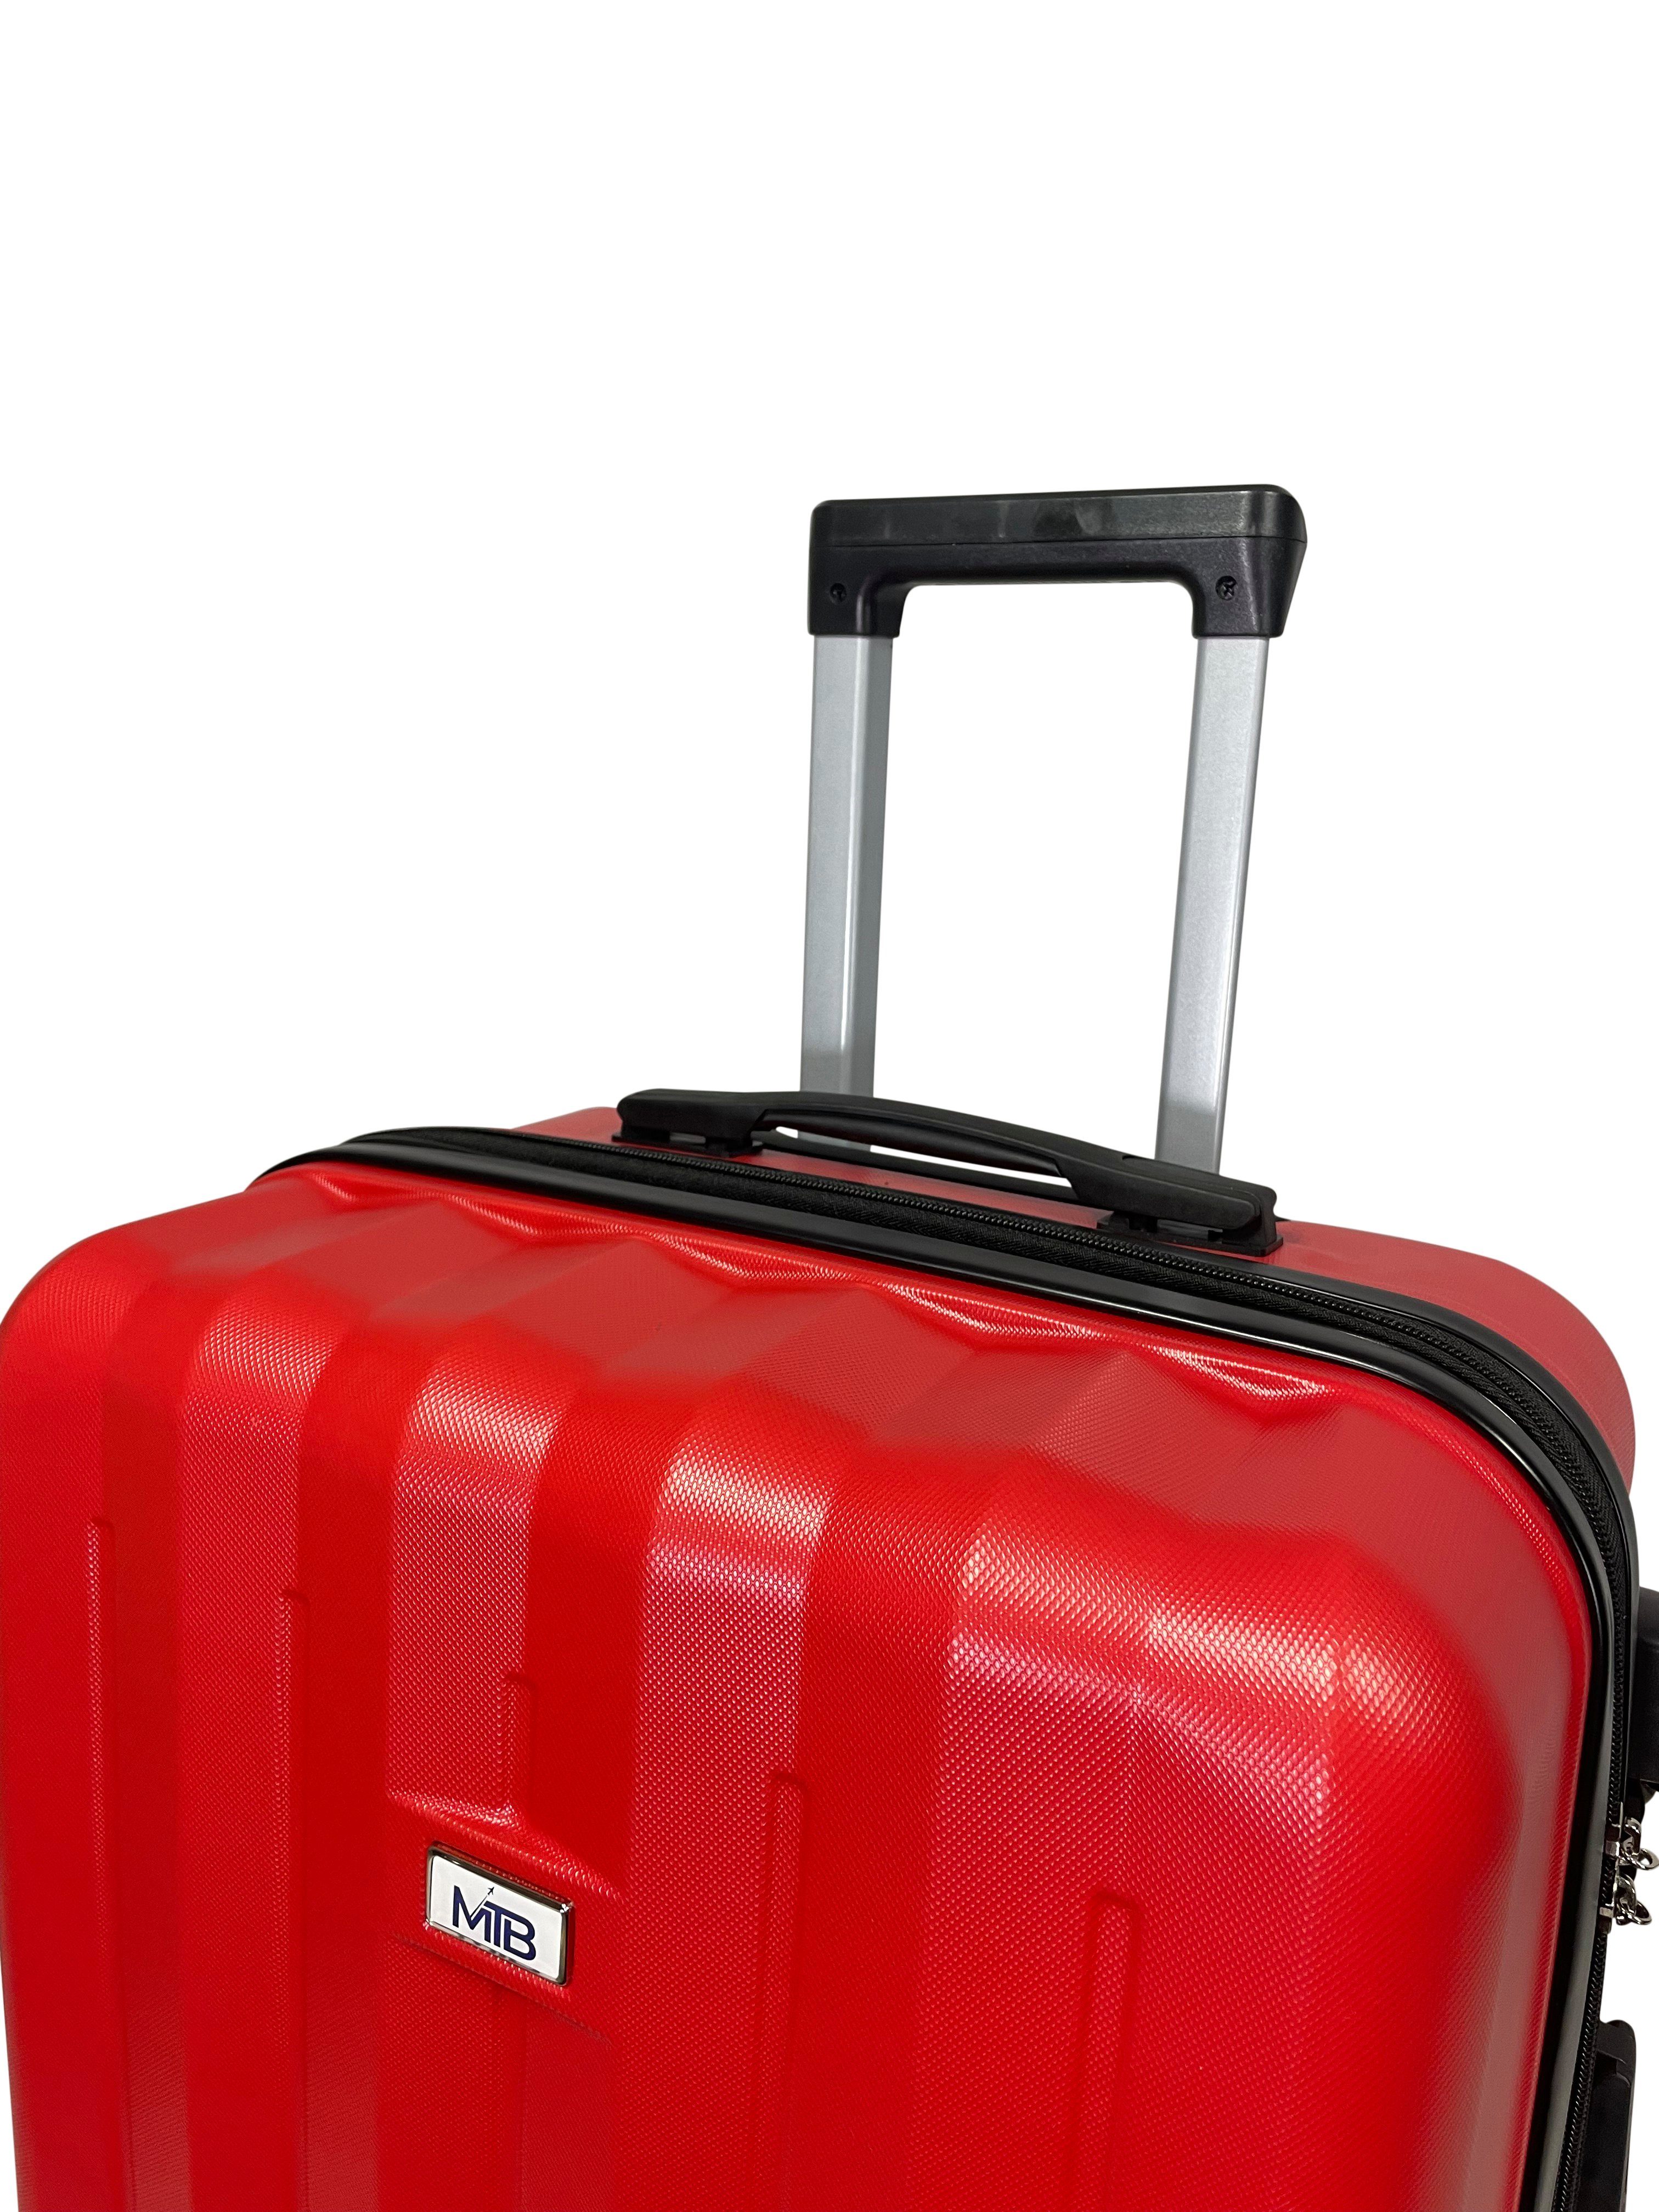 Rot MTB (Handgepäck-Mittel-Groß-Set) erweiterbar Koffer Reisekoffer Hartschalen ABS